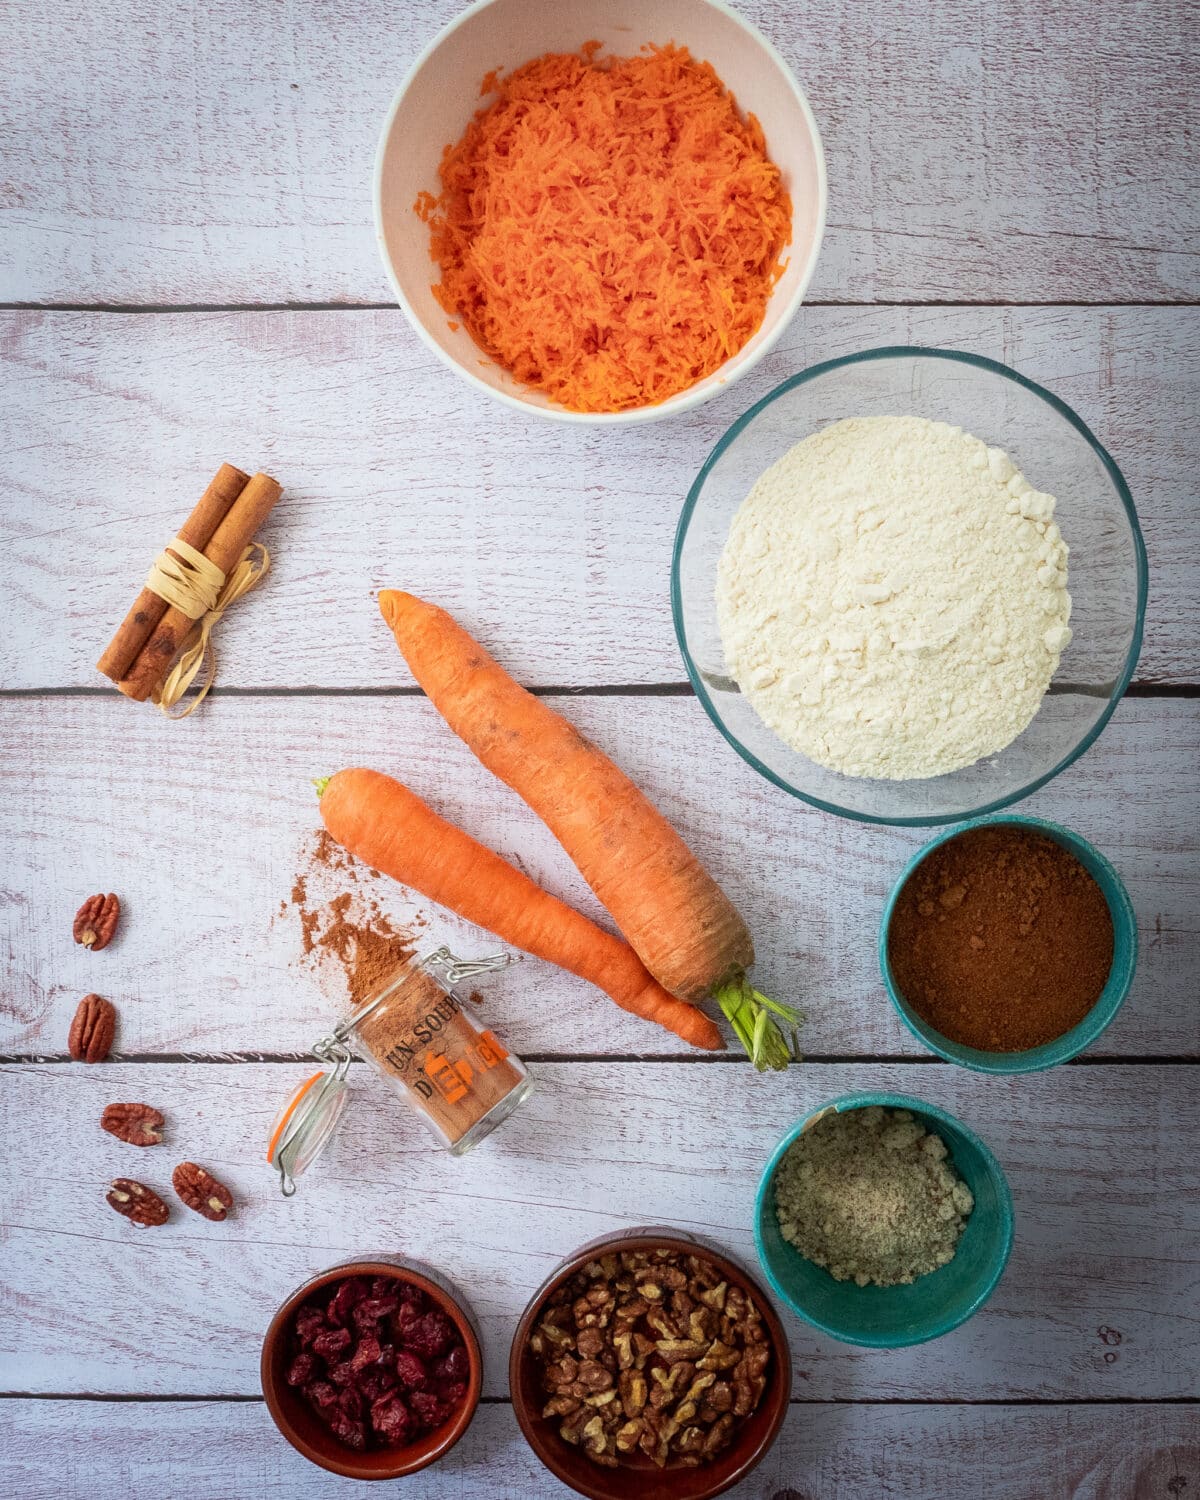 les ingredients pour un carrot cake carottes farine sucre de coco poudre d amande noix cranberries noix de pecan batons de cannelle epices